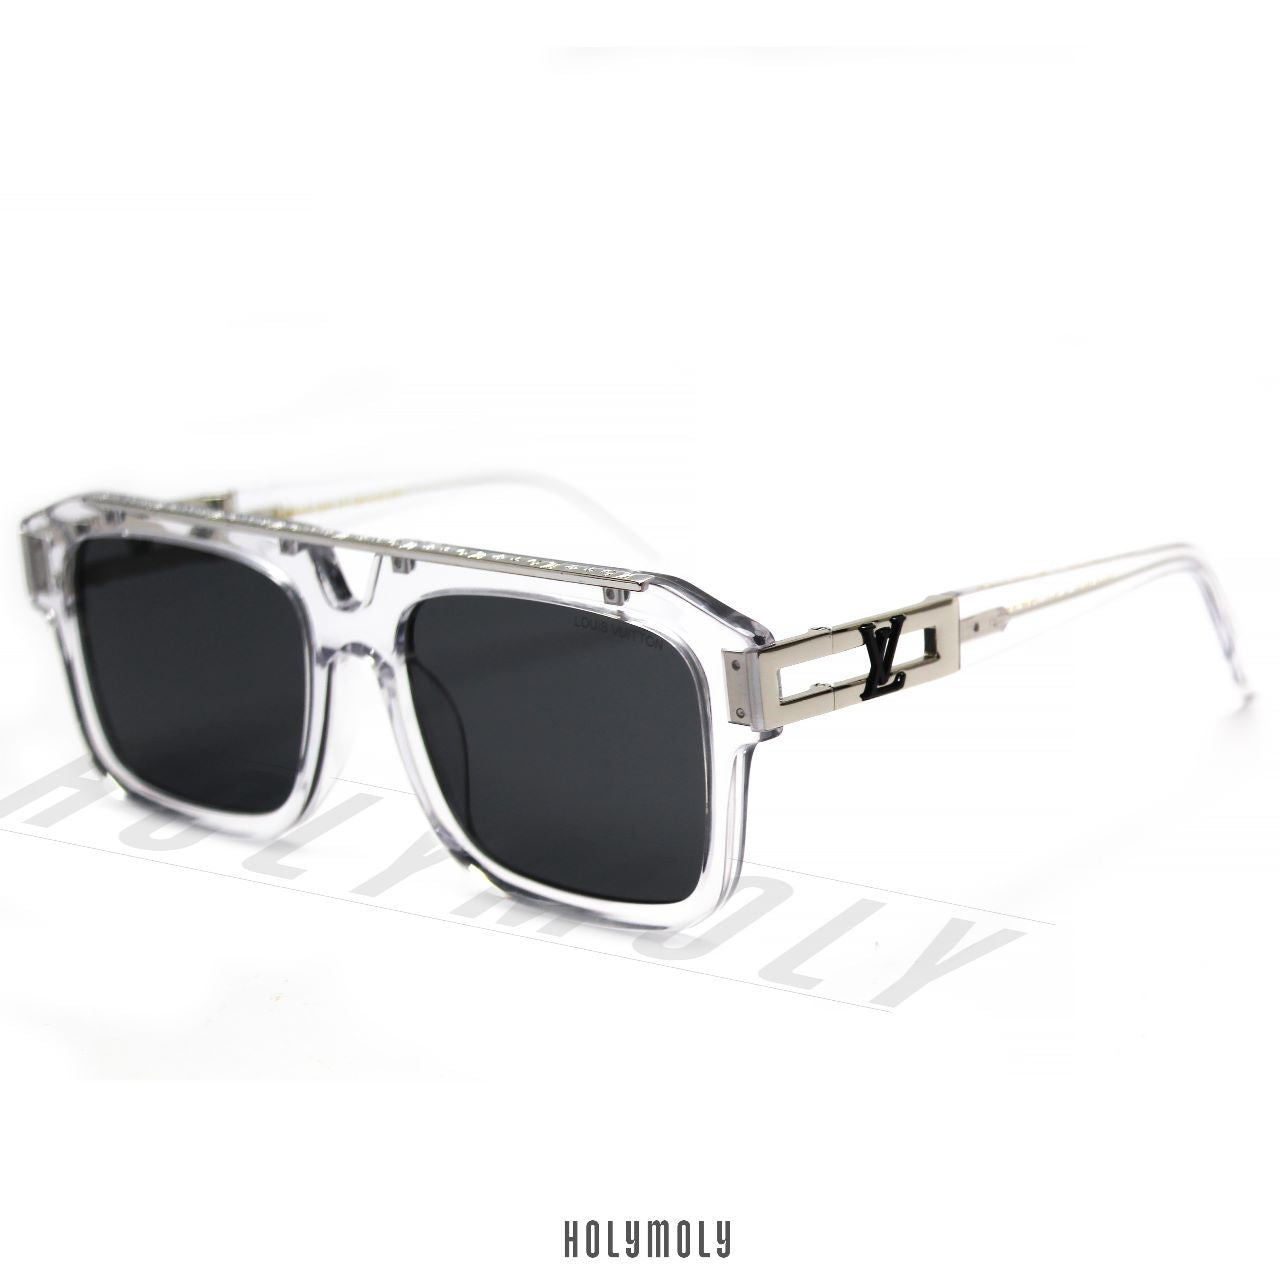 Sunglasses Louis Vuitton Louis Vuitton Square Sunglasses LV Malletage Sold Out